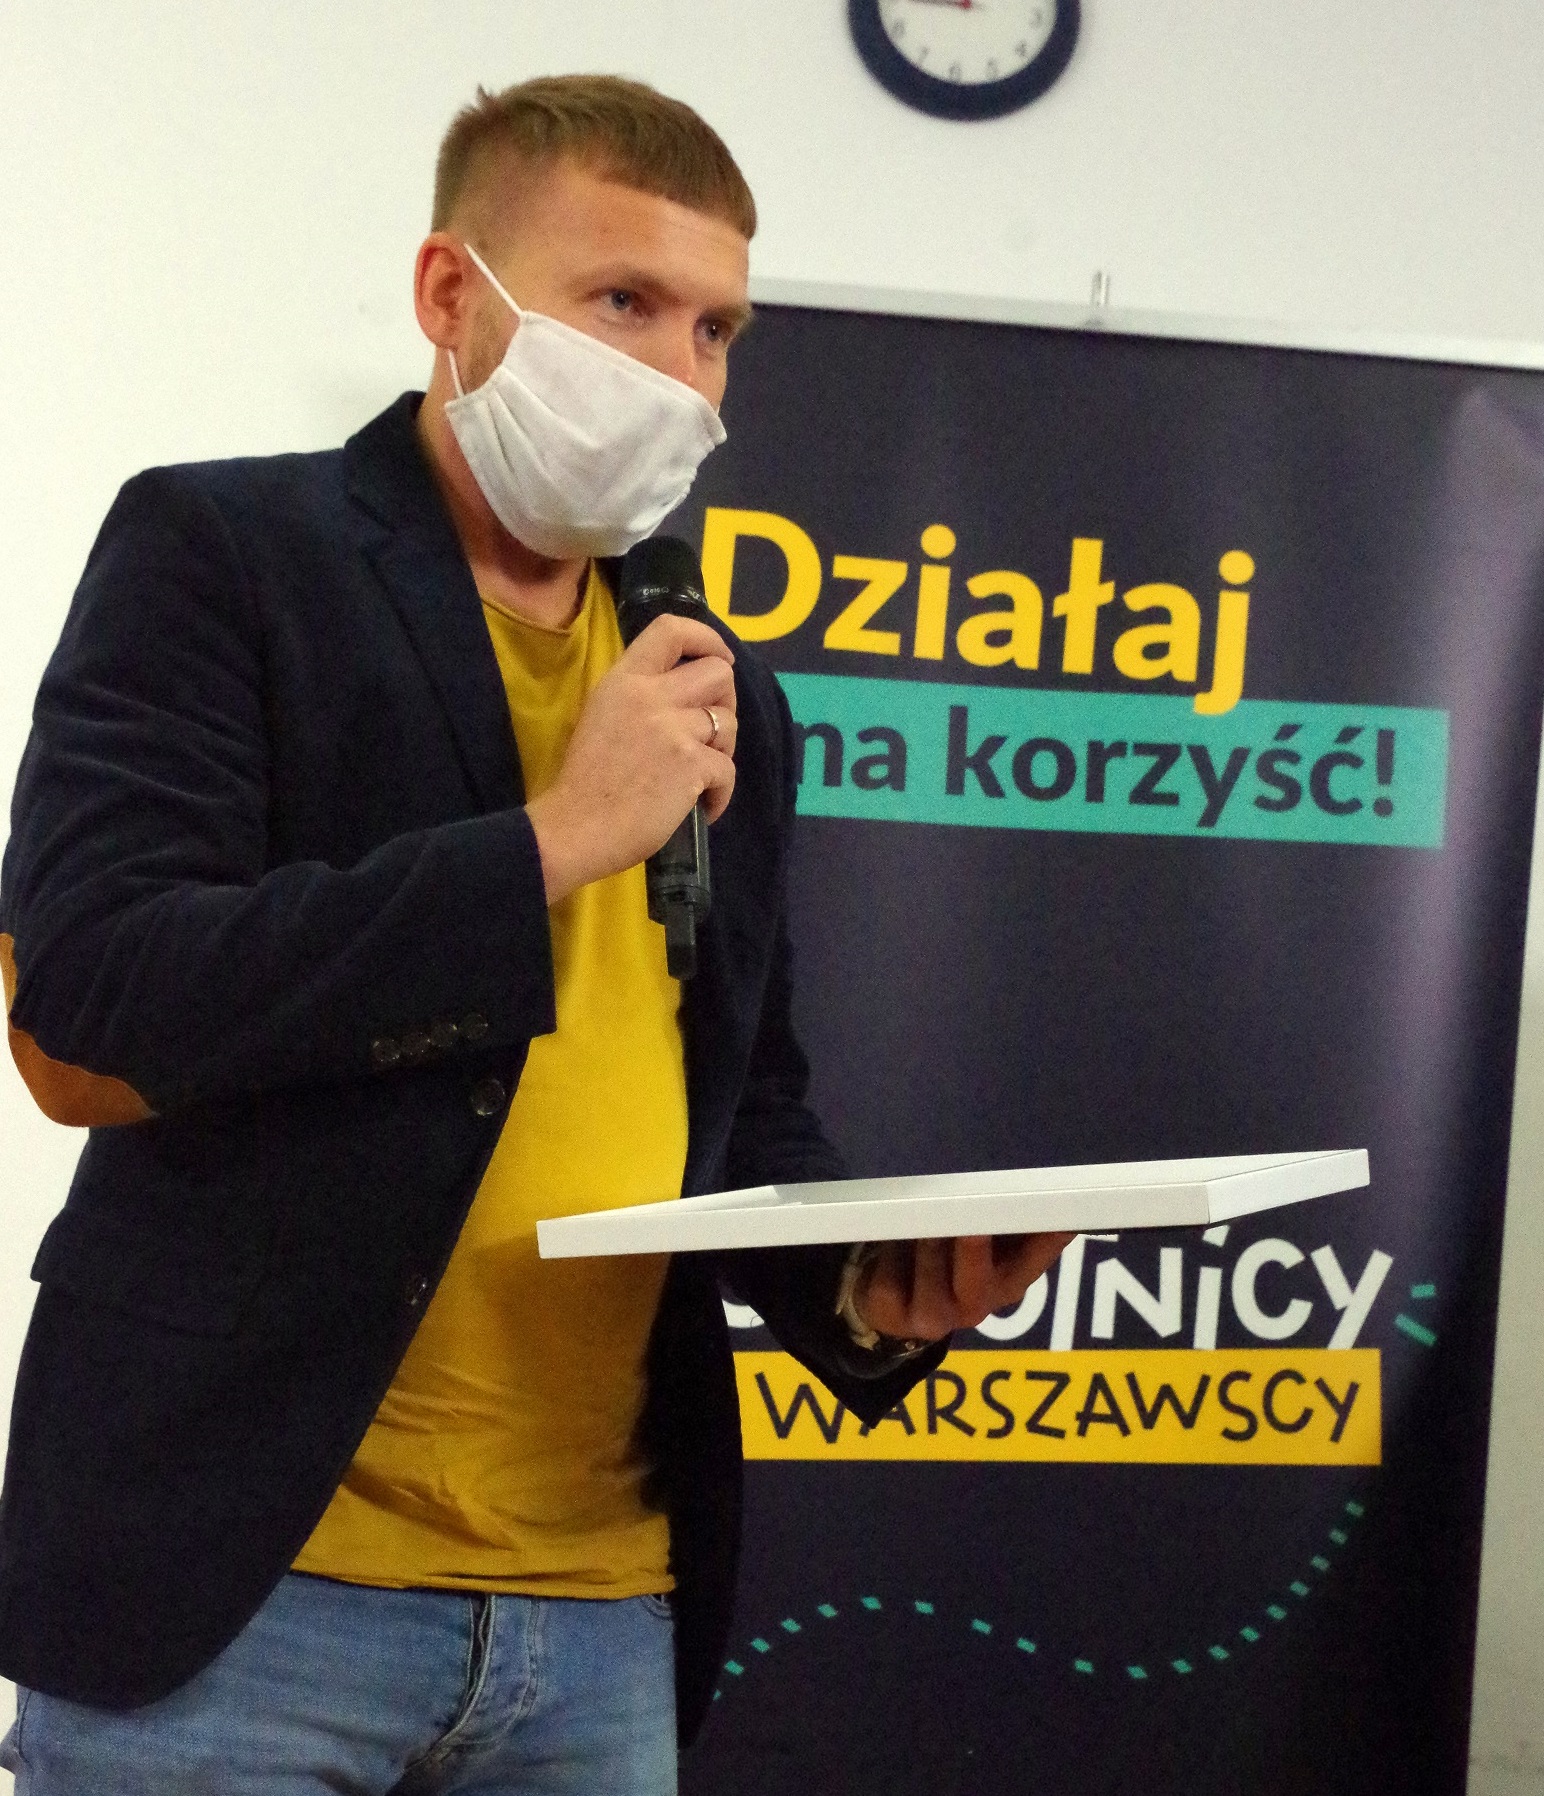 Przemysław Skwarski z dyplomem i mikrofonem w rękach na tle napisu "Działaj na korzyść" po otrzymaniu nagrody